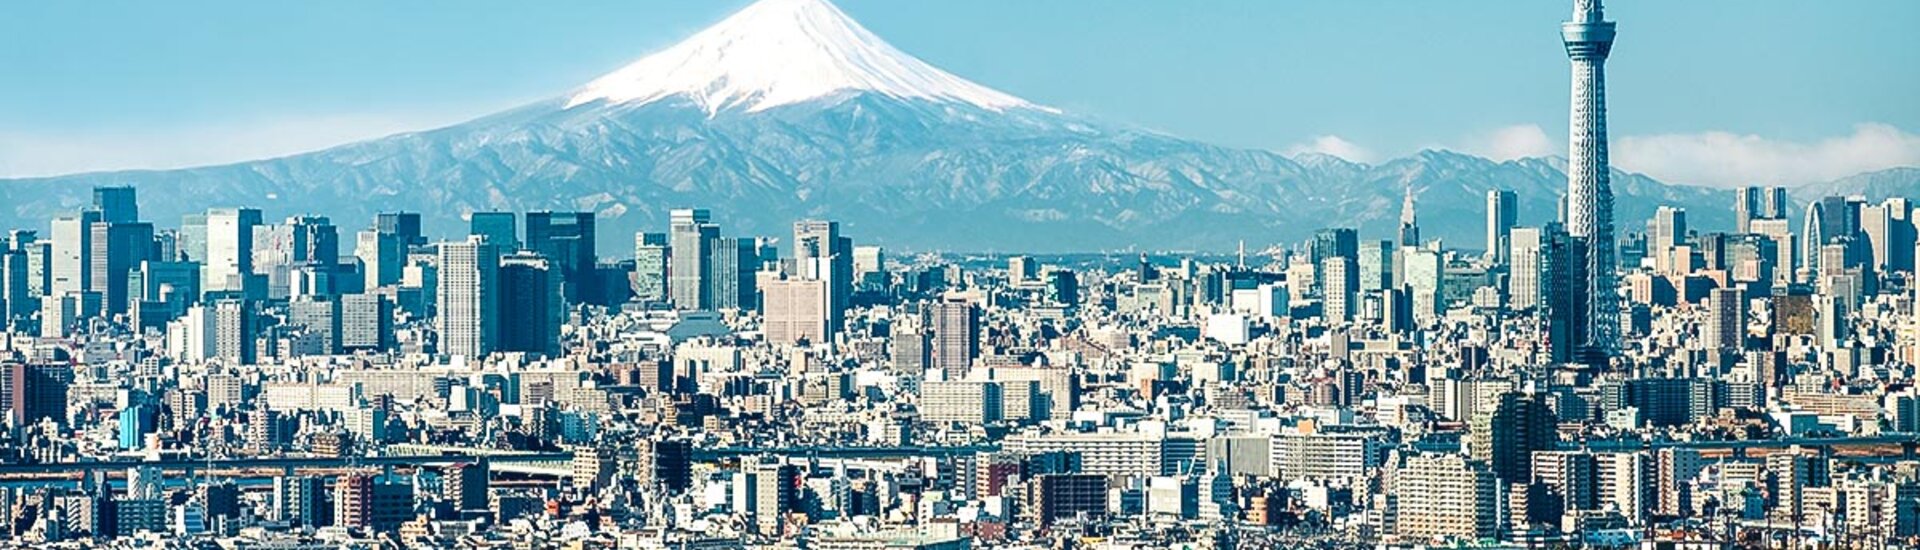 Tokio mit Mt. Fuji und dem Skytree